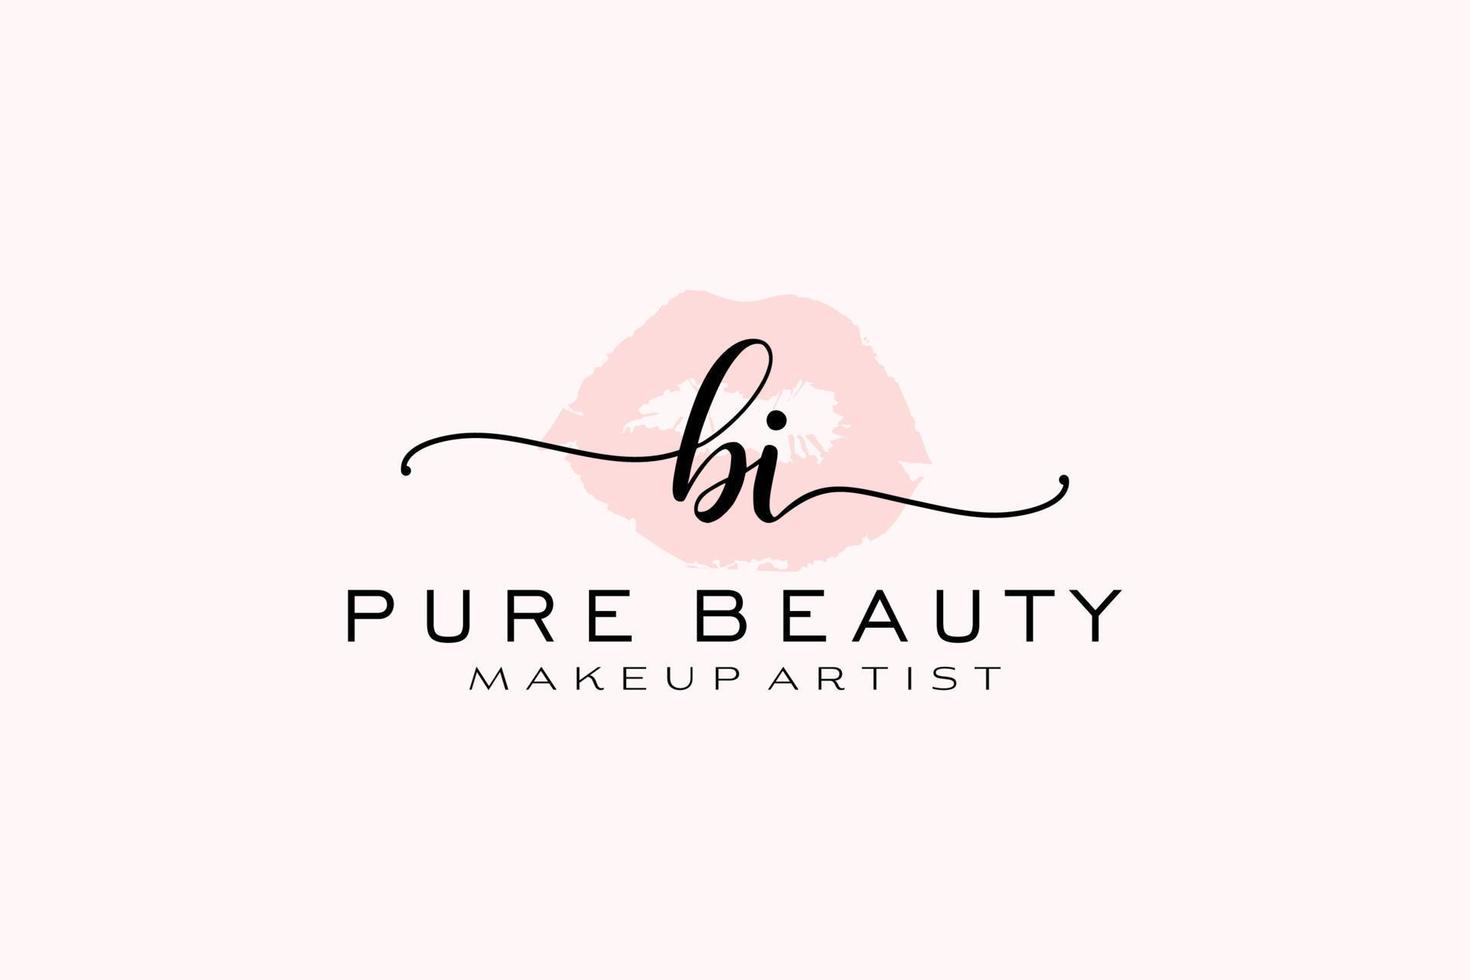 vorgefertigtes Logo-Design für Bi-Aquarell-Lippen, Logo für Make-up-Künstler-Business-Branding, Blush-Beauty-Boutique-Logo-Design, Kalligrafie-Logo mit kreativer Vorlage. vektor